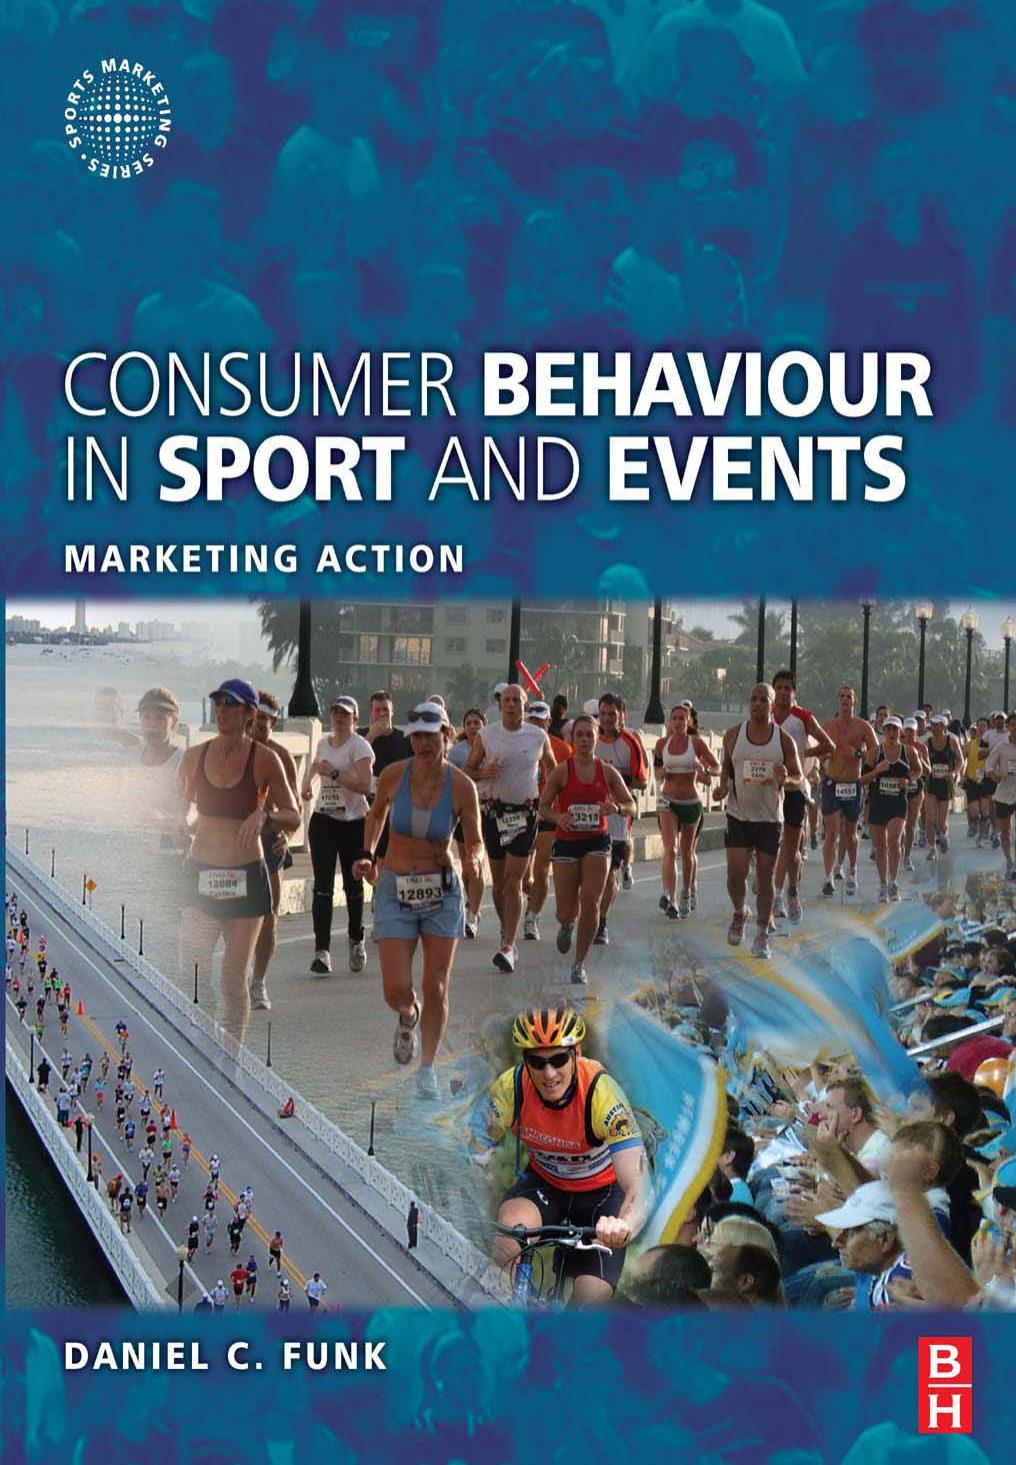 Daniel C. Funk-Consumer Behaviour in Sport and Events Marketing Action (Sports Marketing)-Butterworth-Heinemann (2008)